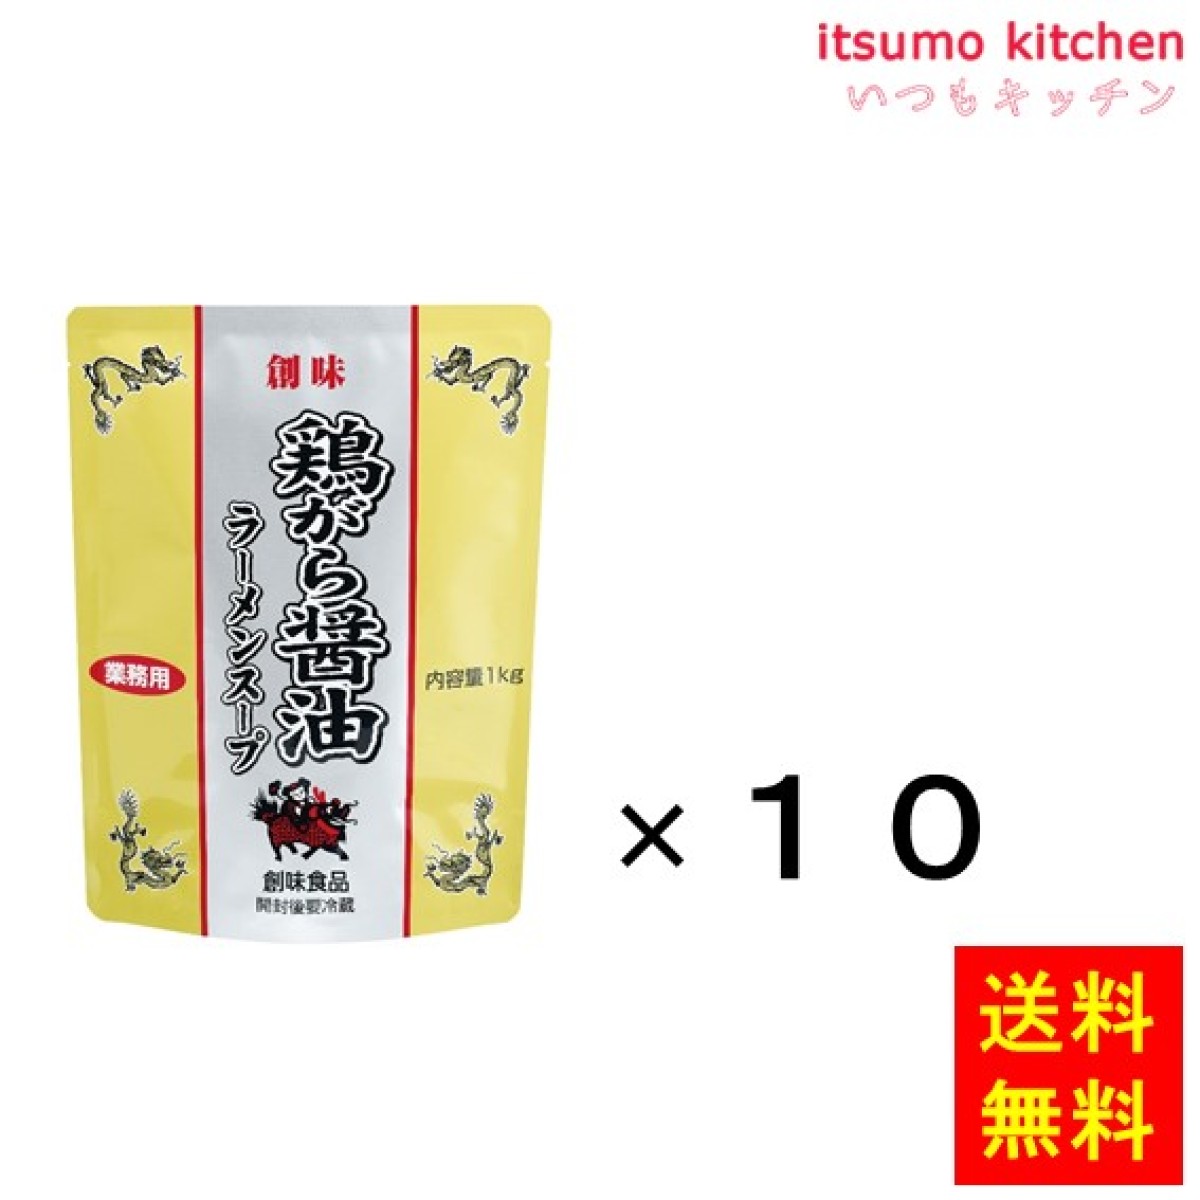 196041x10【送料無料】鶏がら醤油ラーメンスープ 1kgx10袋 創味食品